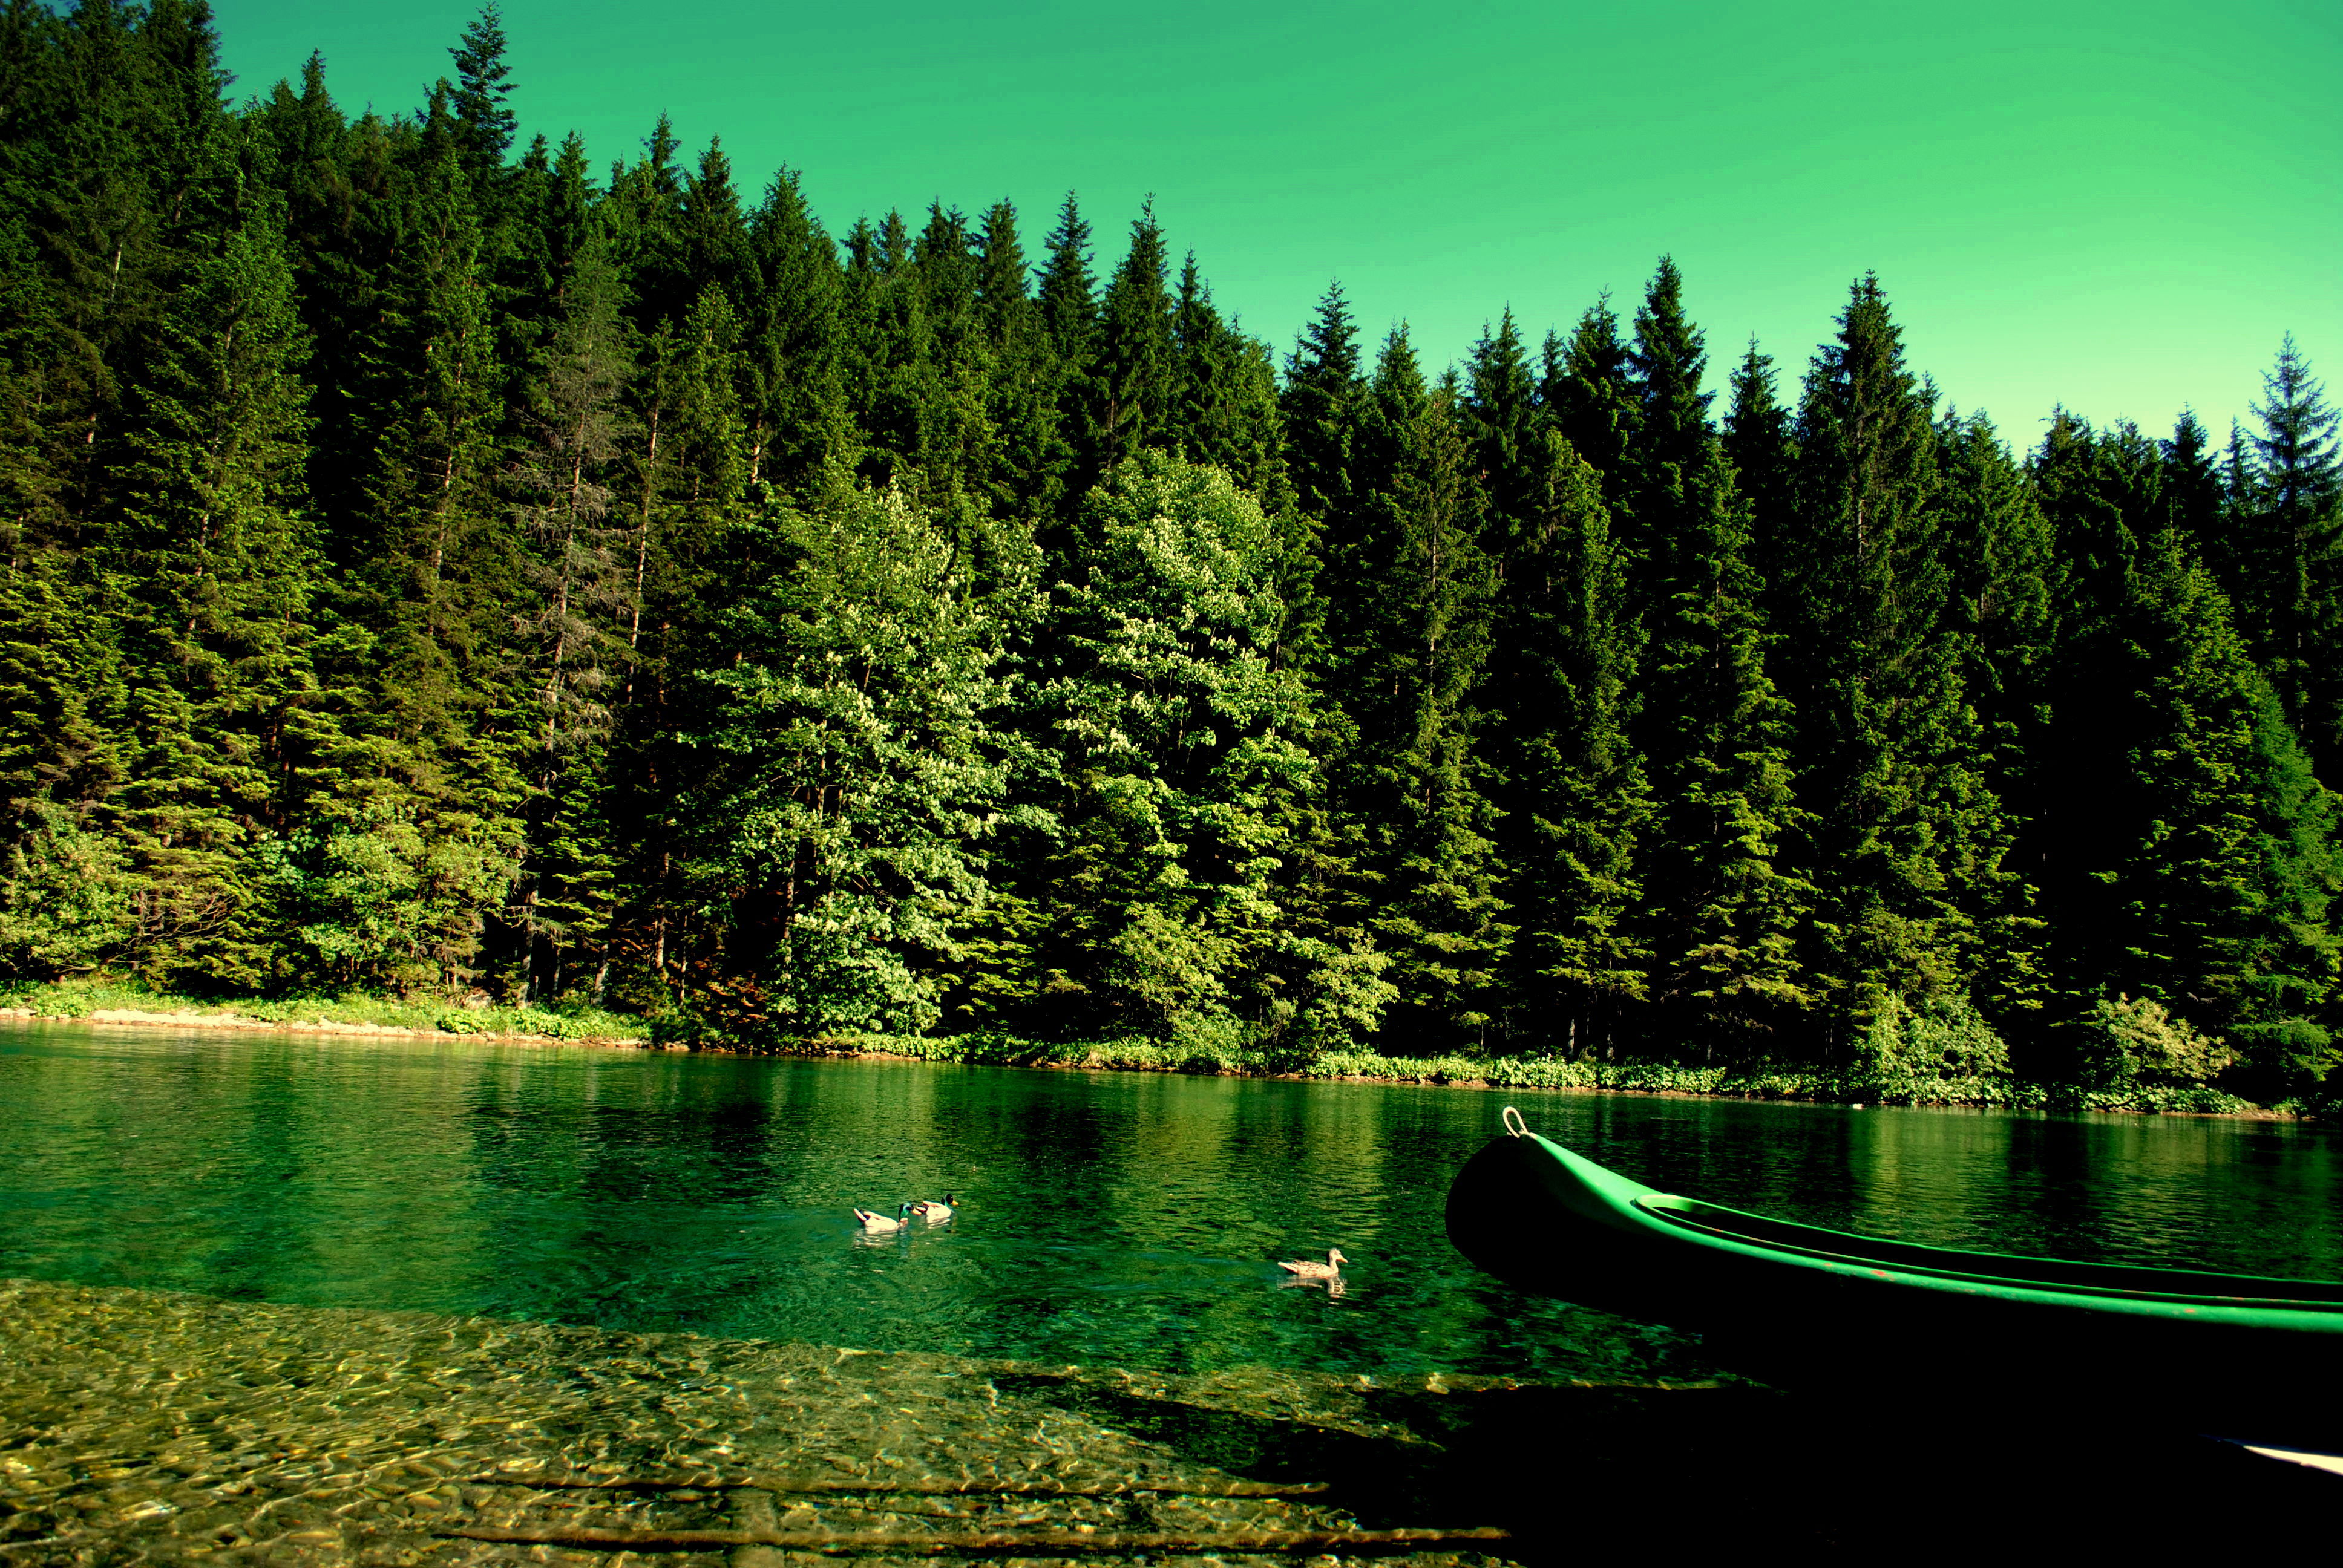 Картинка на обои высокого качества. Озеро Рица. Озеро Грин Лейк Гавайи. Телецкое озеро. Природа лес.